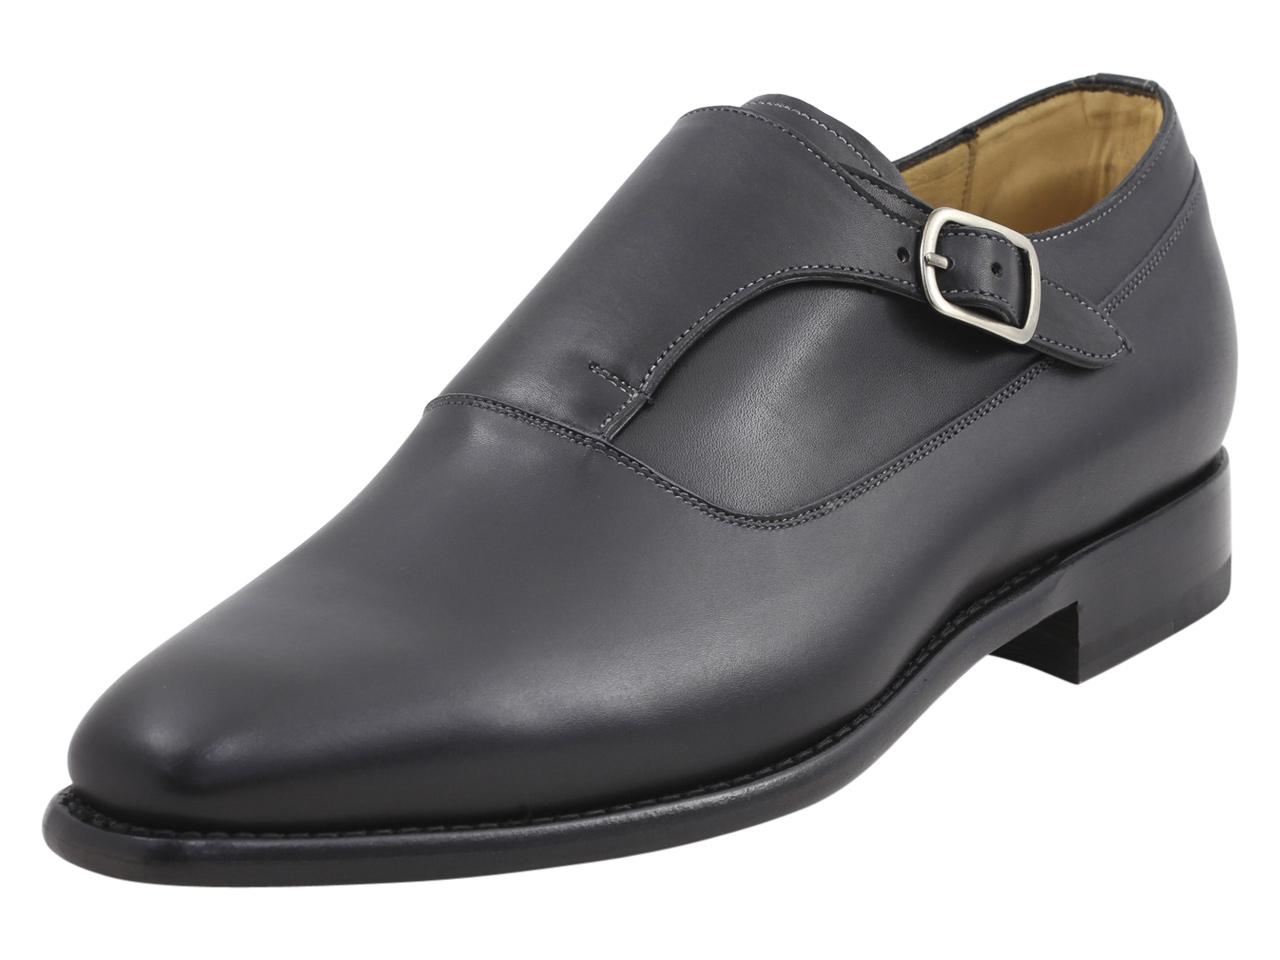 Mezlan Platinum Men's Algar Memory Foam Leather Monk Strap Loafers Shoes - Black - 9.5 D(M) US